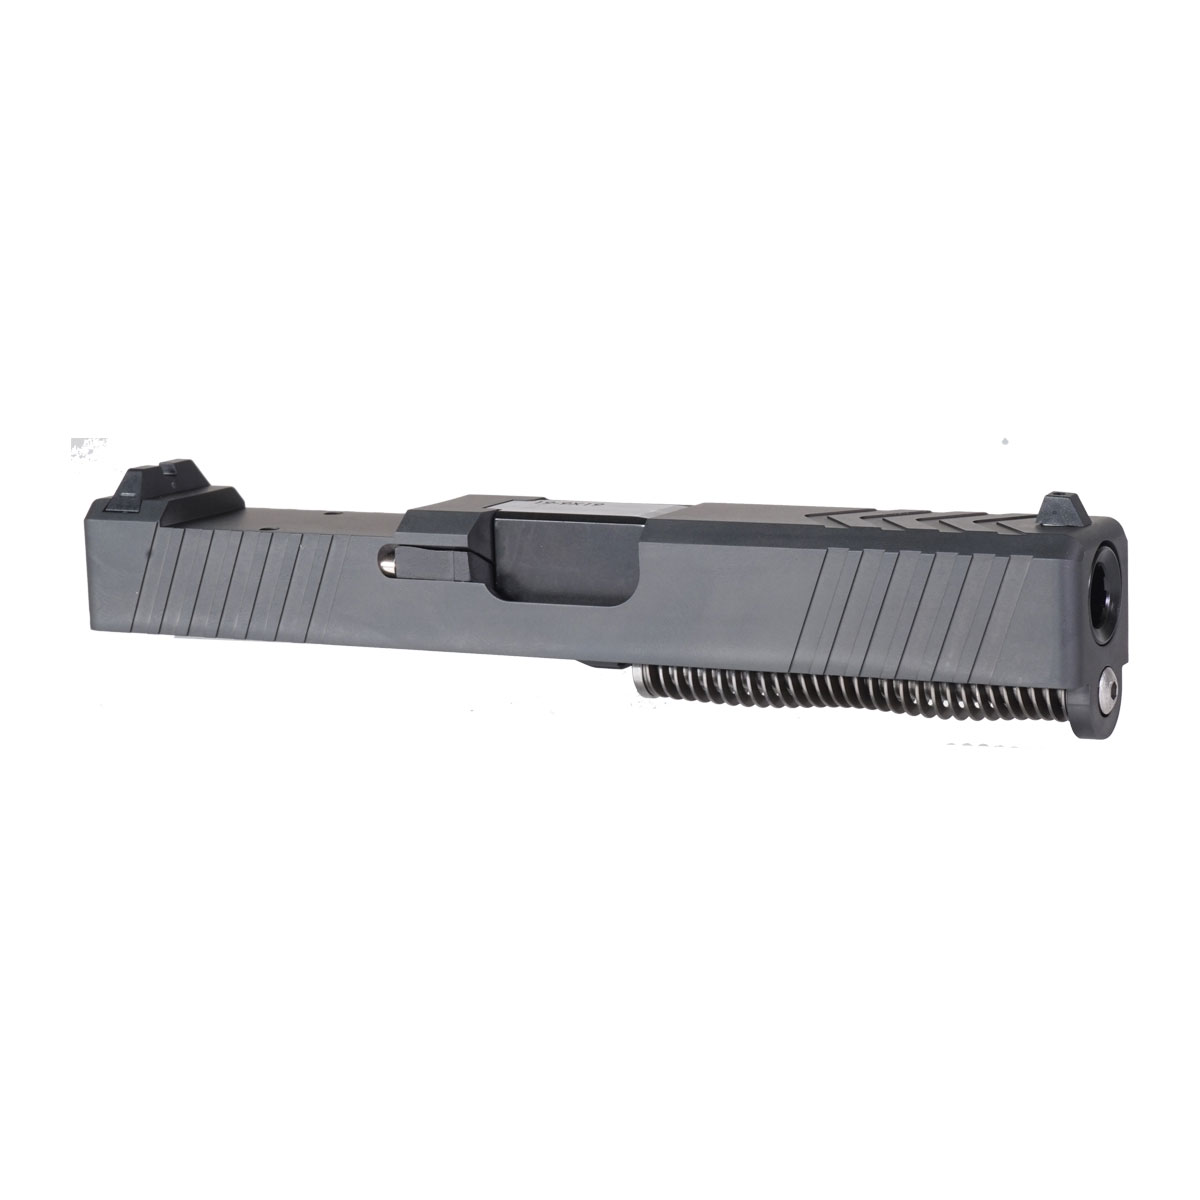 MMC 'The Petersen' 9mm Complete Slide Kit - Glock 19 Gen 1-3 Compatible